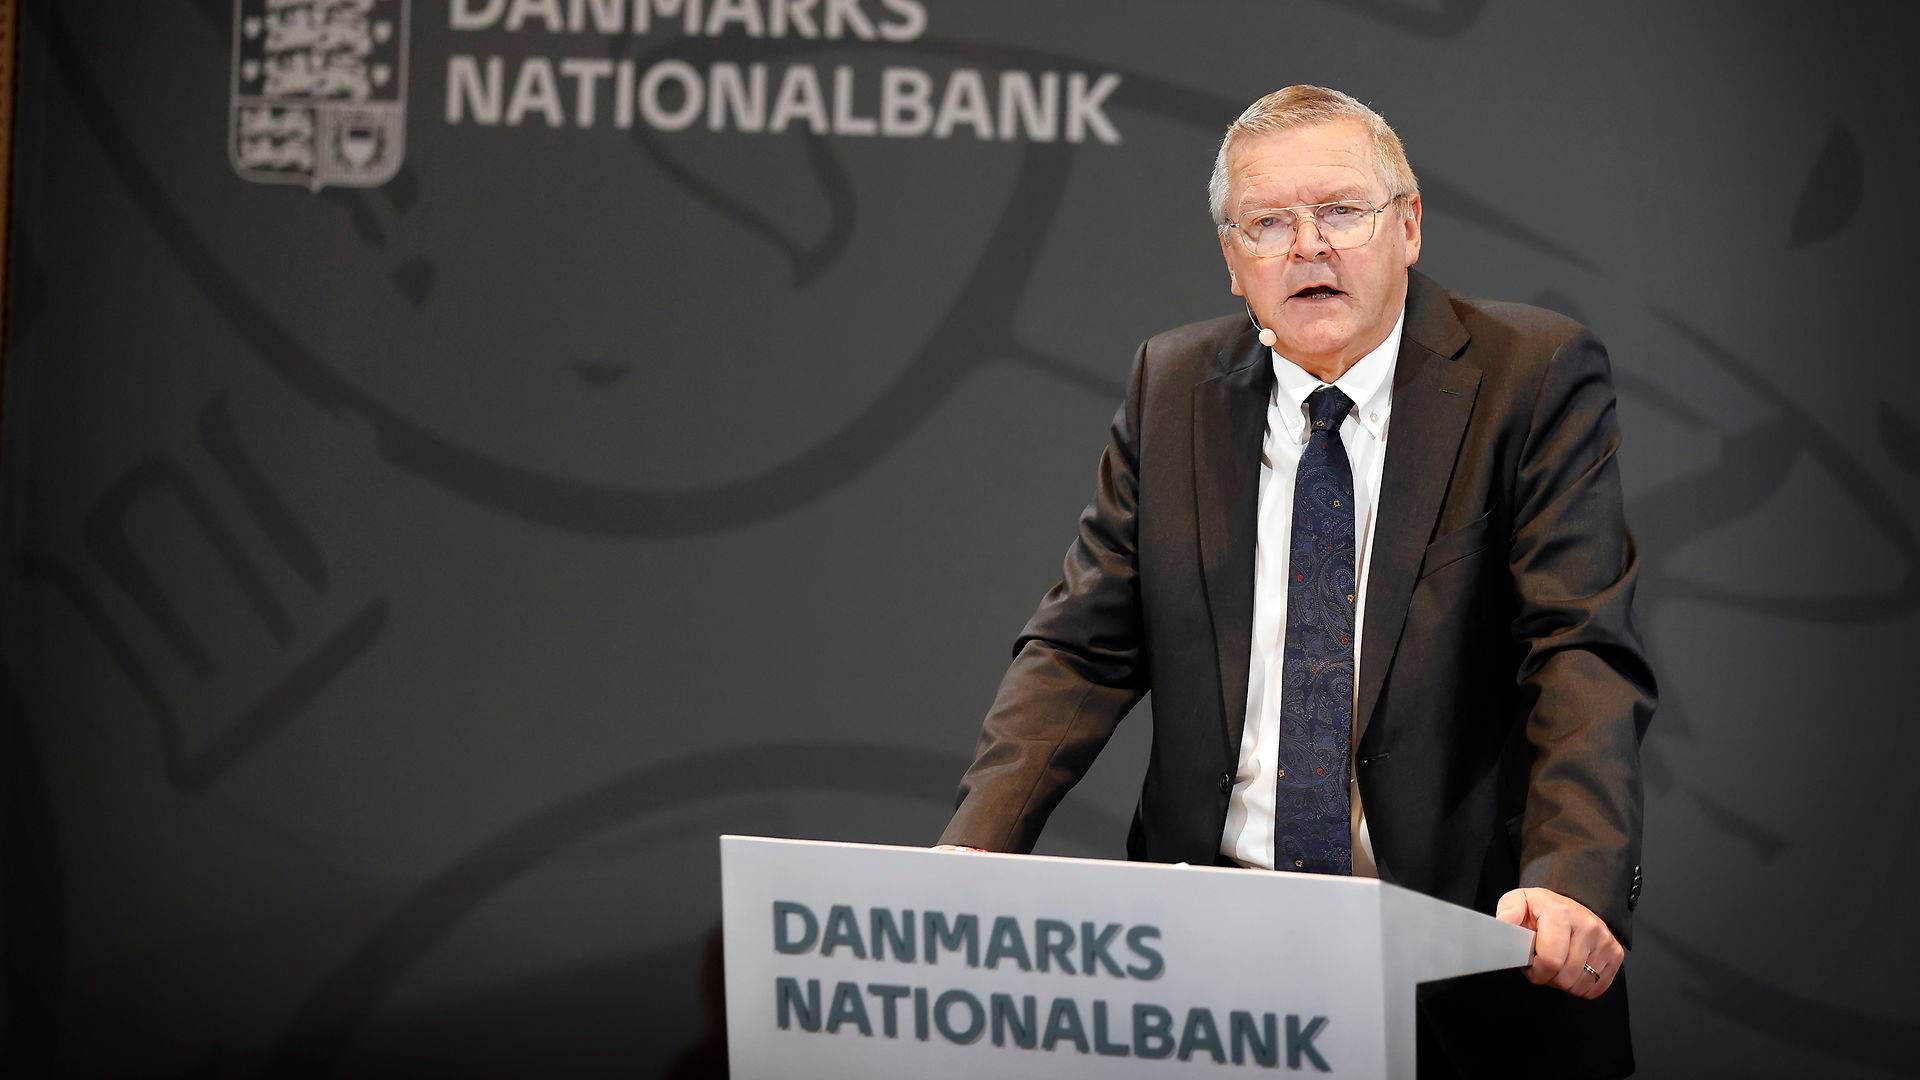 Nationalbankdirektør Lars Rohde har fået et nyt instrument til at følge økonomien med. | Foto: Jens Dresling/Ritzau Scanpix